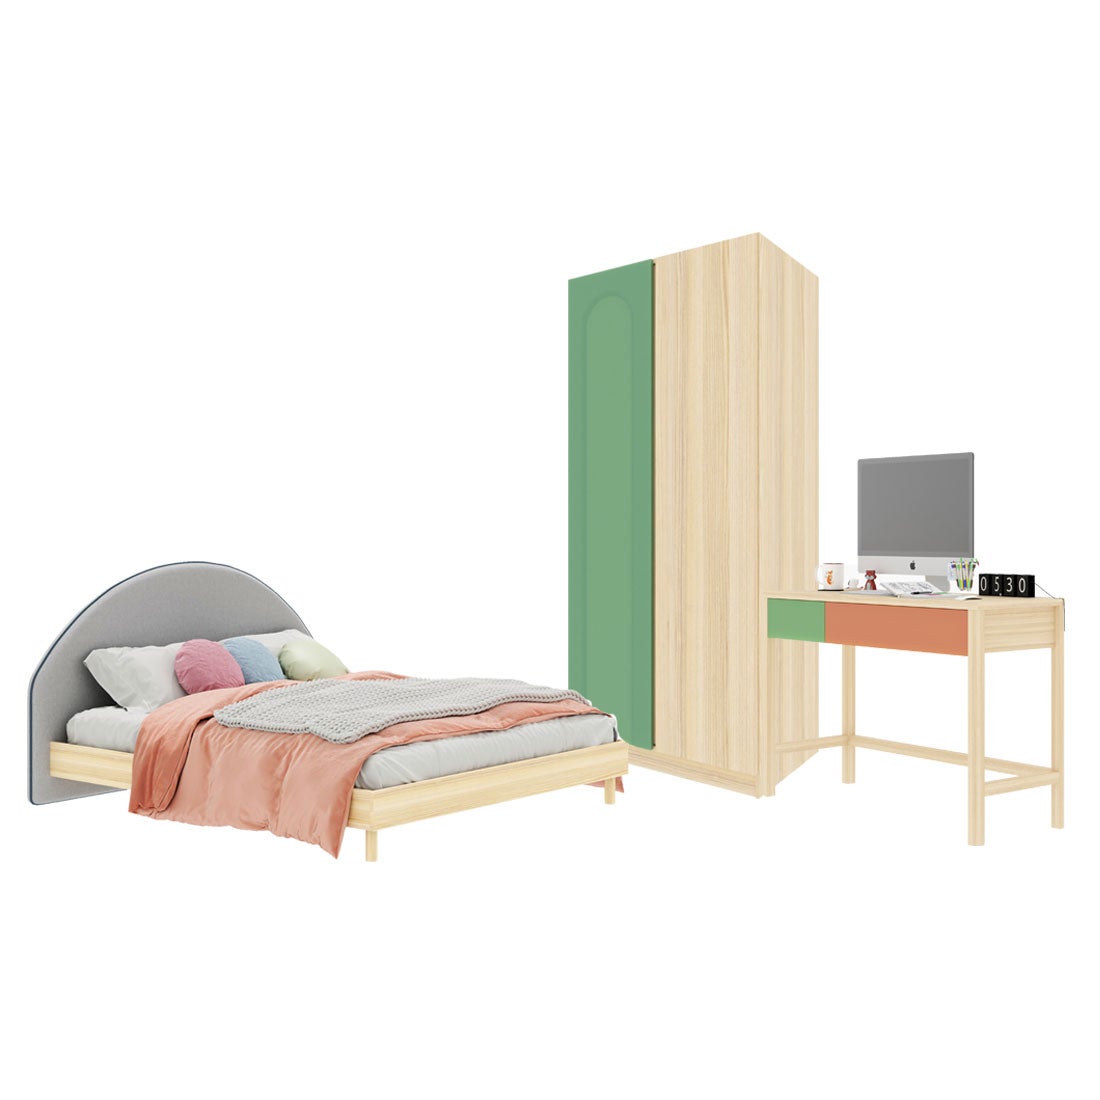 ชุดห้องนอน ขนาด 6 ฟุต-เบาะครีม รุ่น Bingsoo & ตู้เสื้อผ้า 90 ซม. สีเขียว01